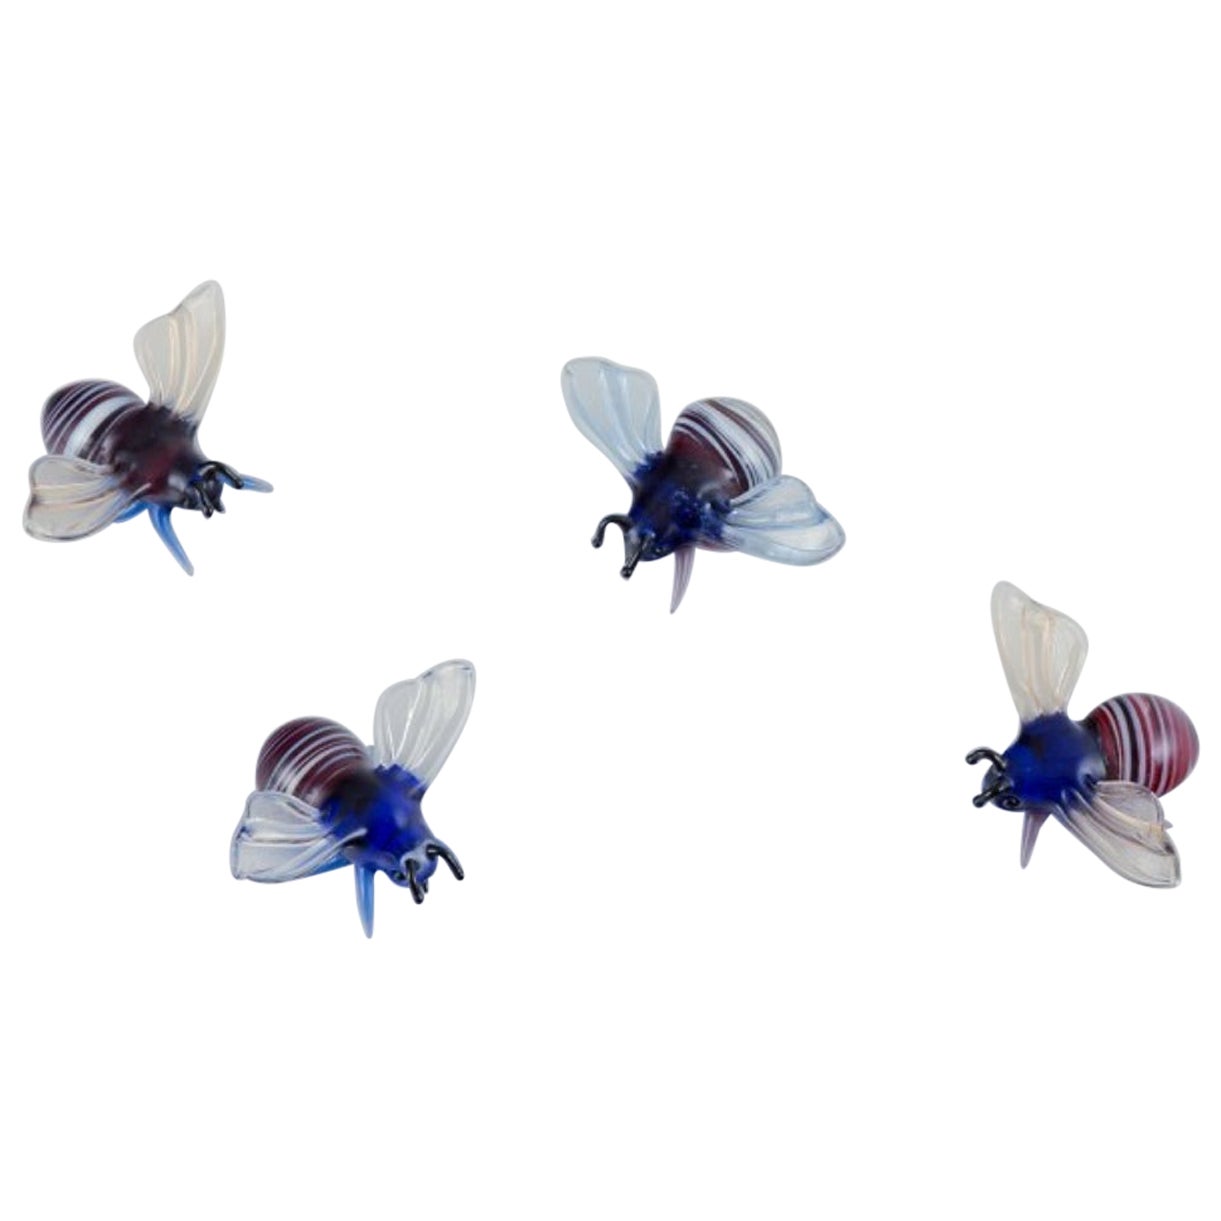 Murano, Italien. Eine Sammlung von vier Miniatur-Glasfiguren von Bienen.